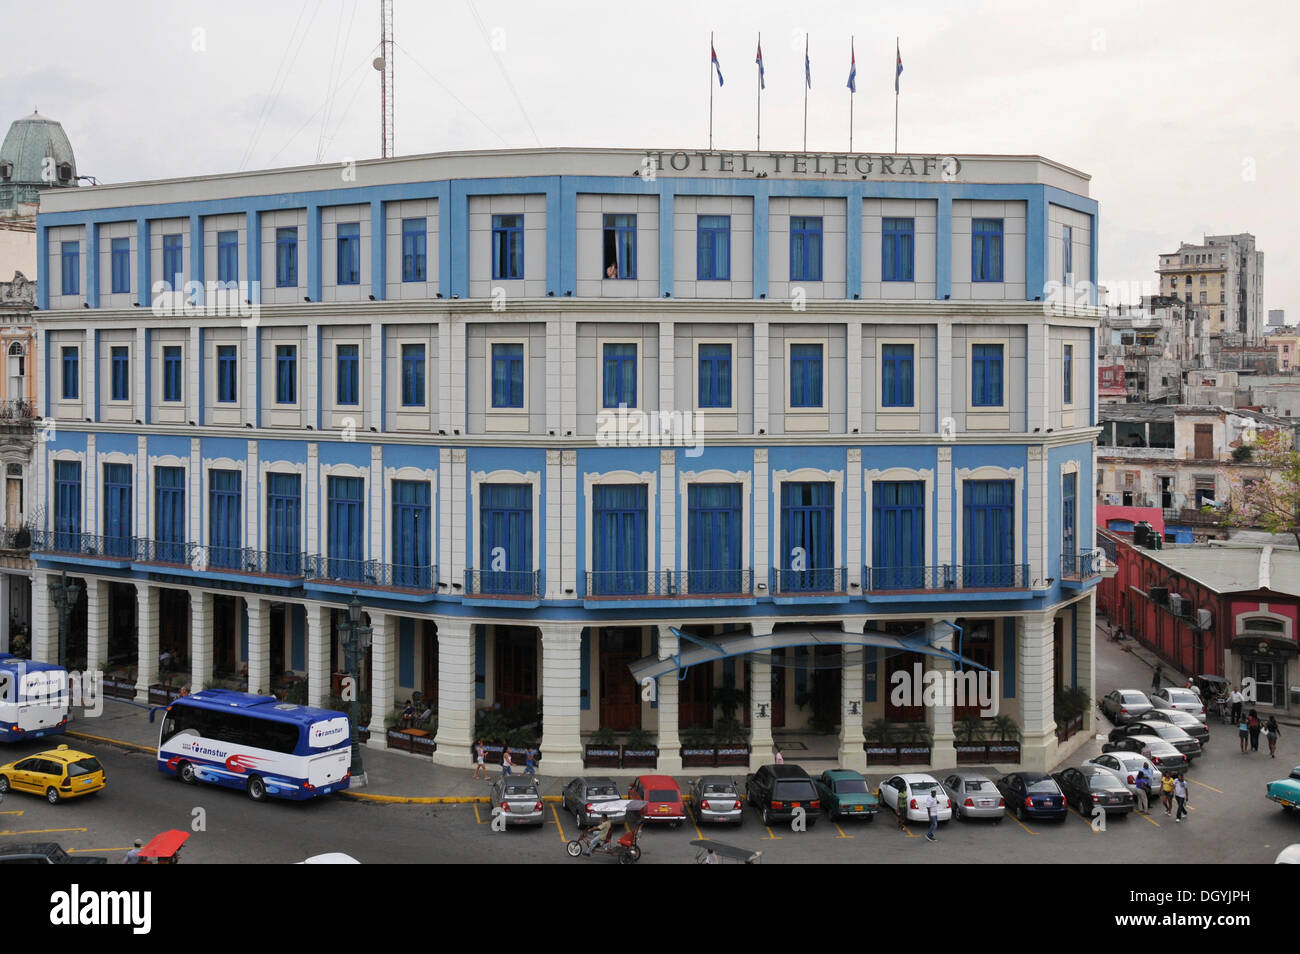 Hotel Telegrafo, Central Plaza, Havana, historic town centre, Cuba, Caribbean, Central America Stock Photo